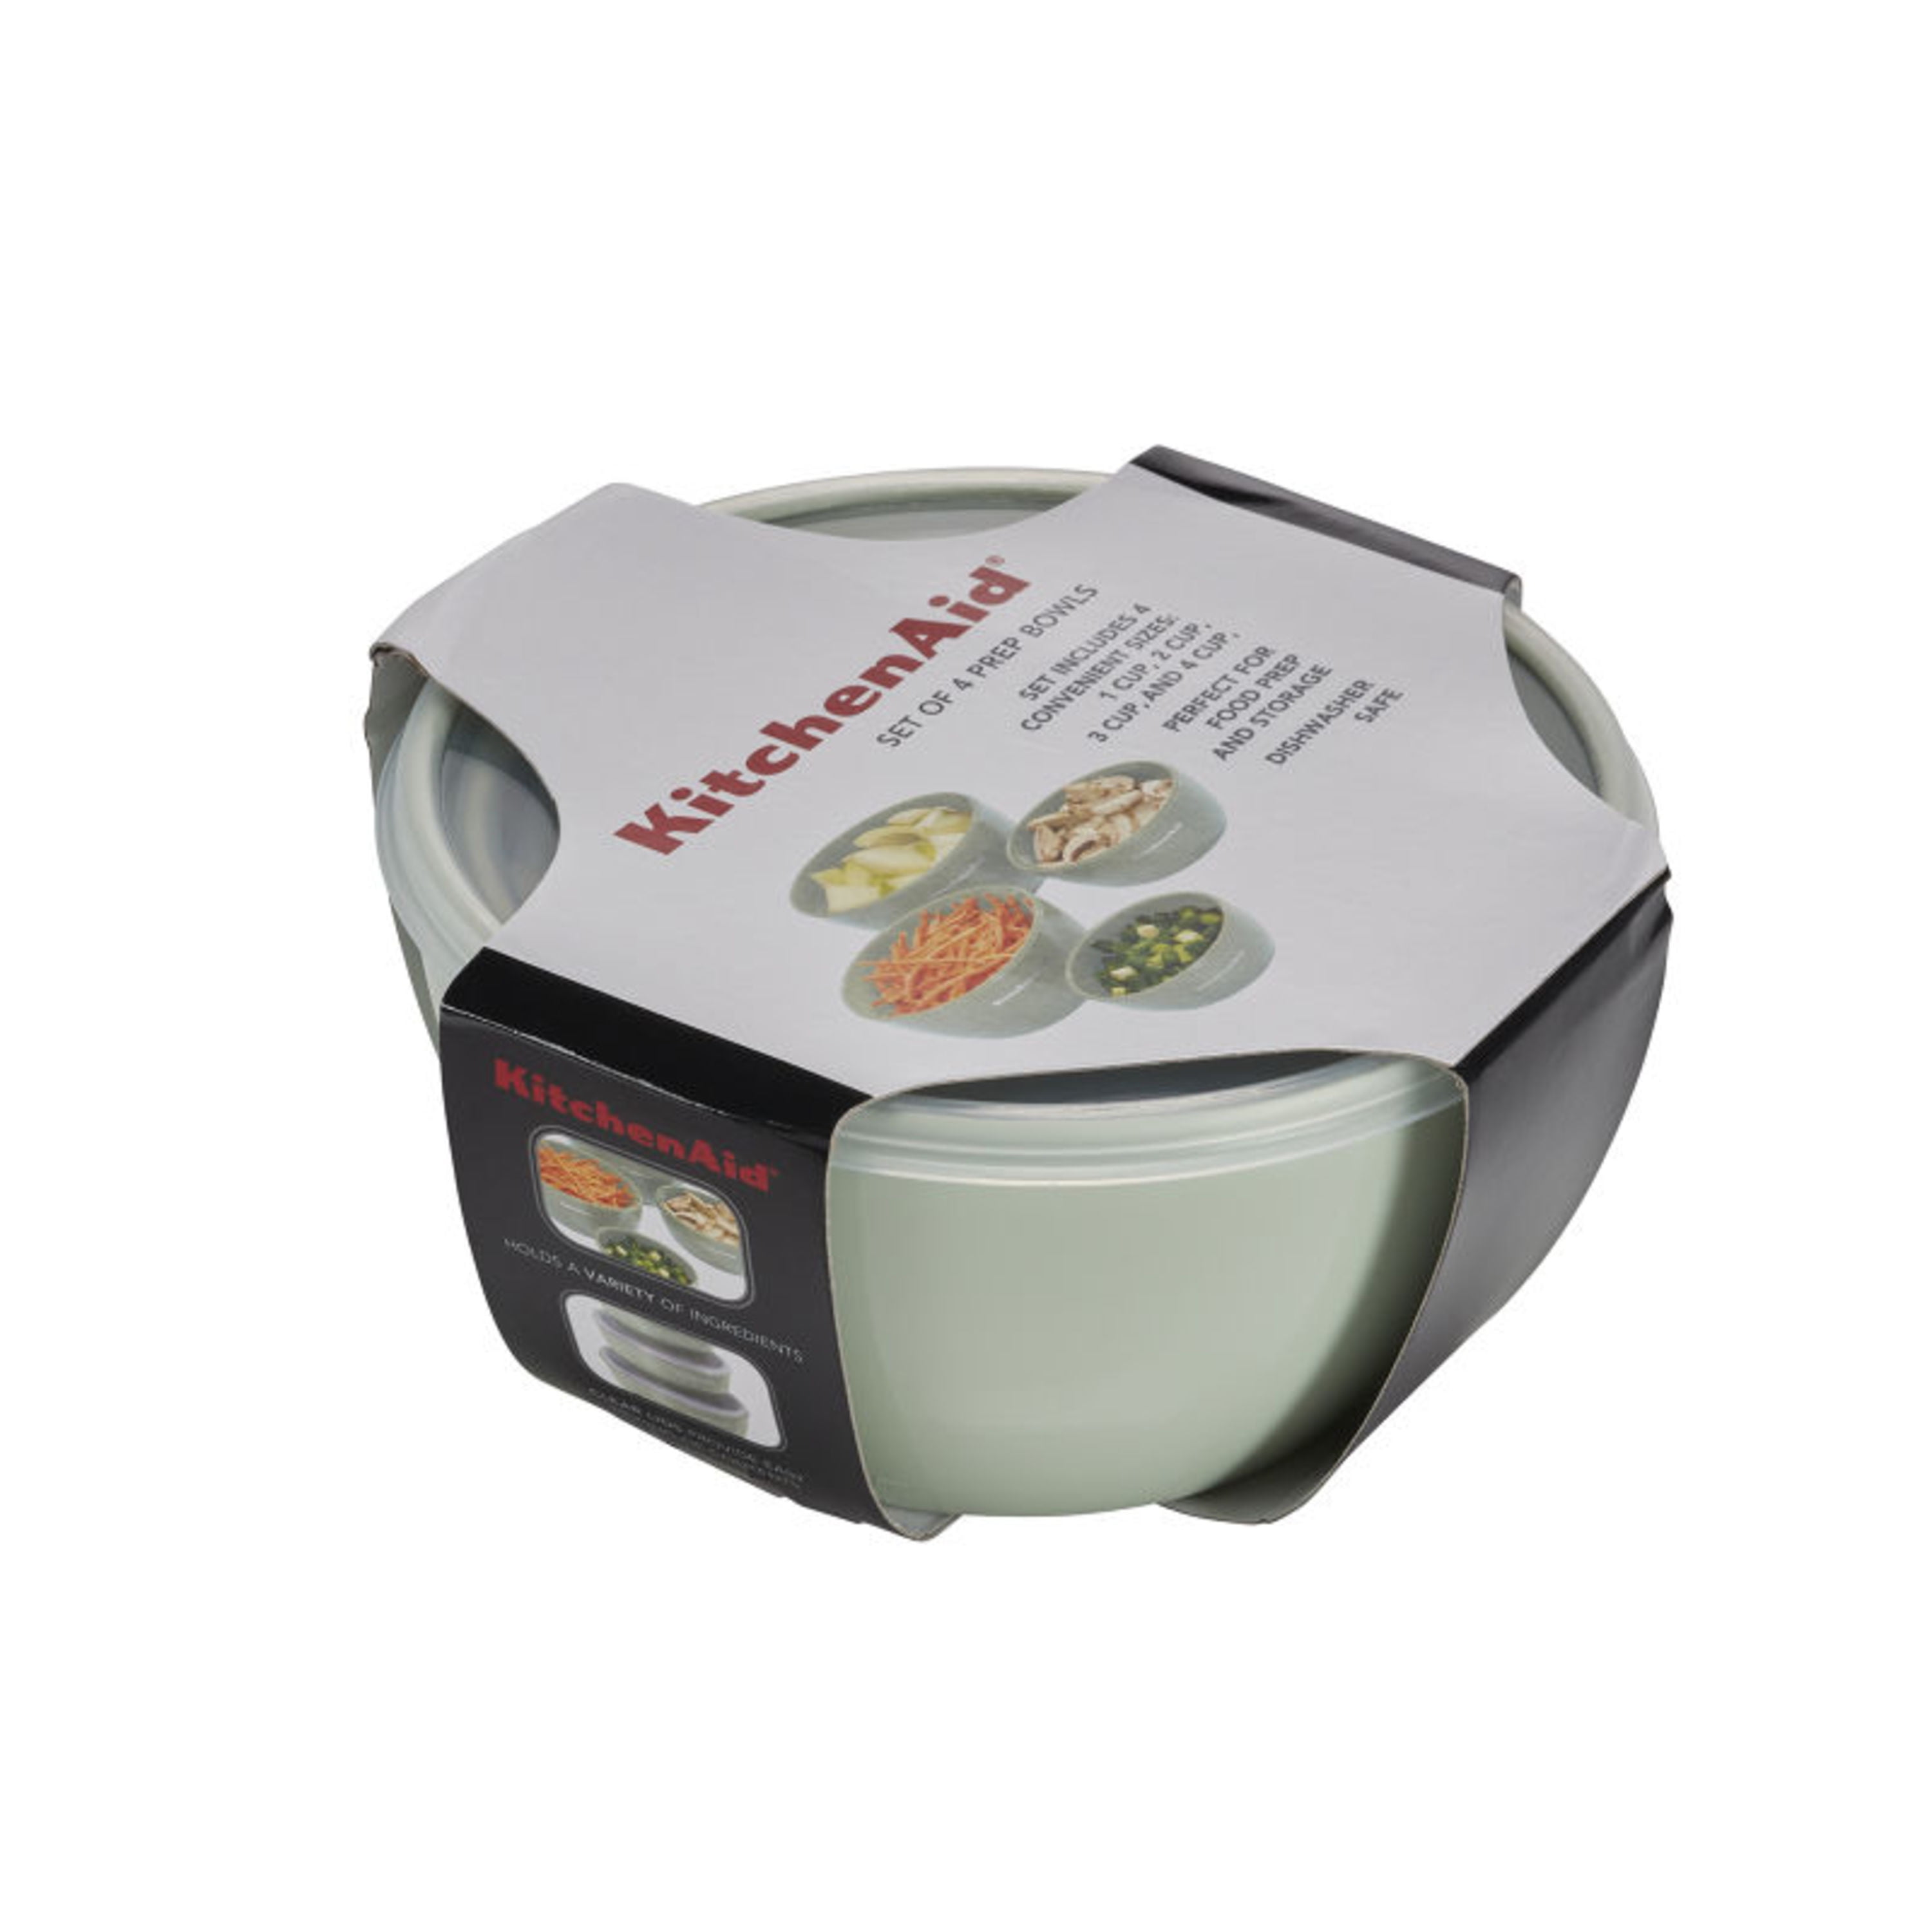 KitchenAid SET 4 Storage Prep Bowls Clear Lids Nesting VTG Green plastic